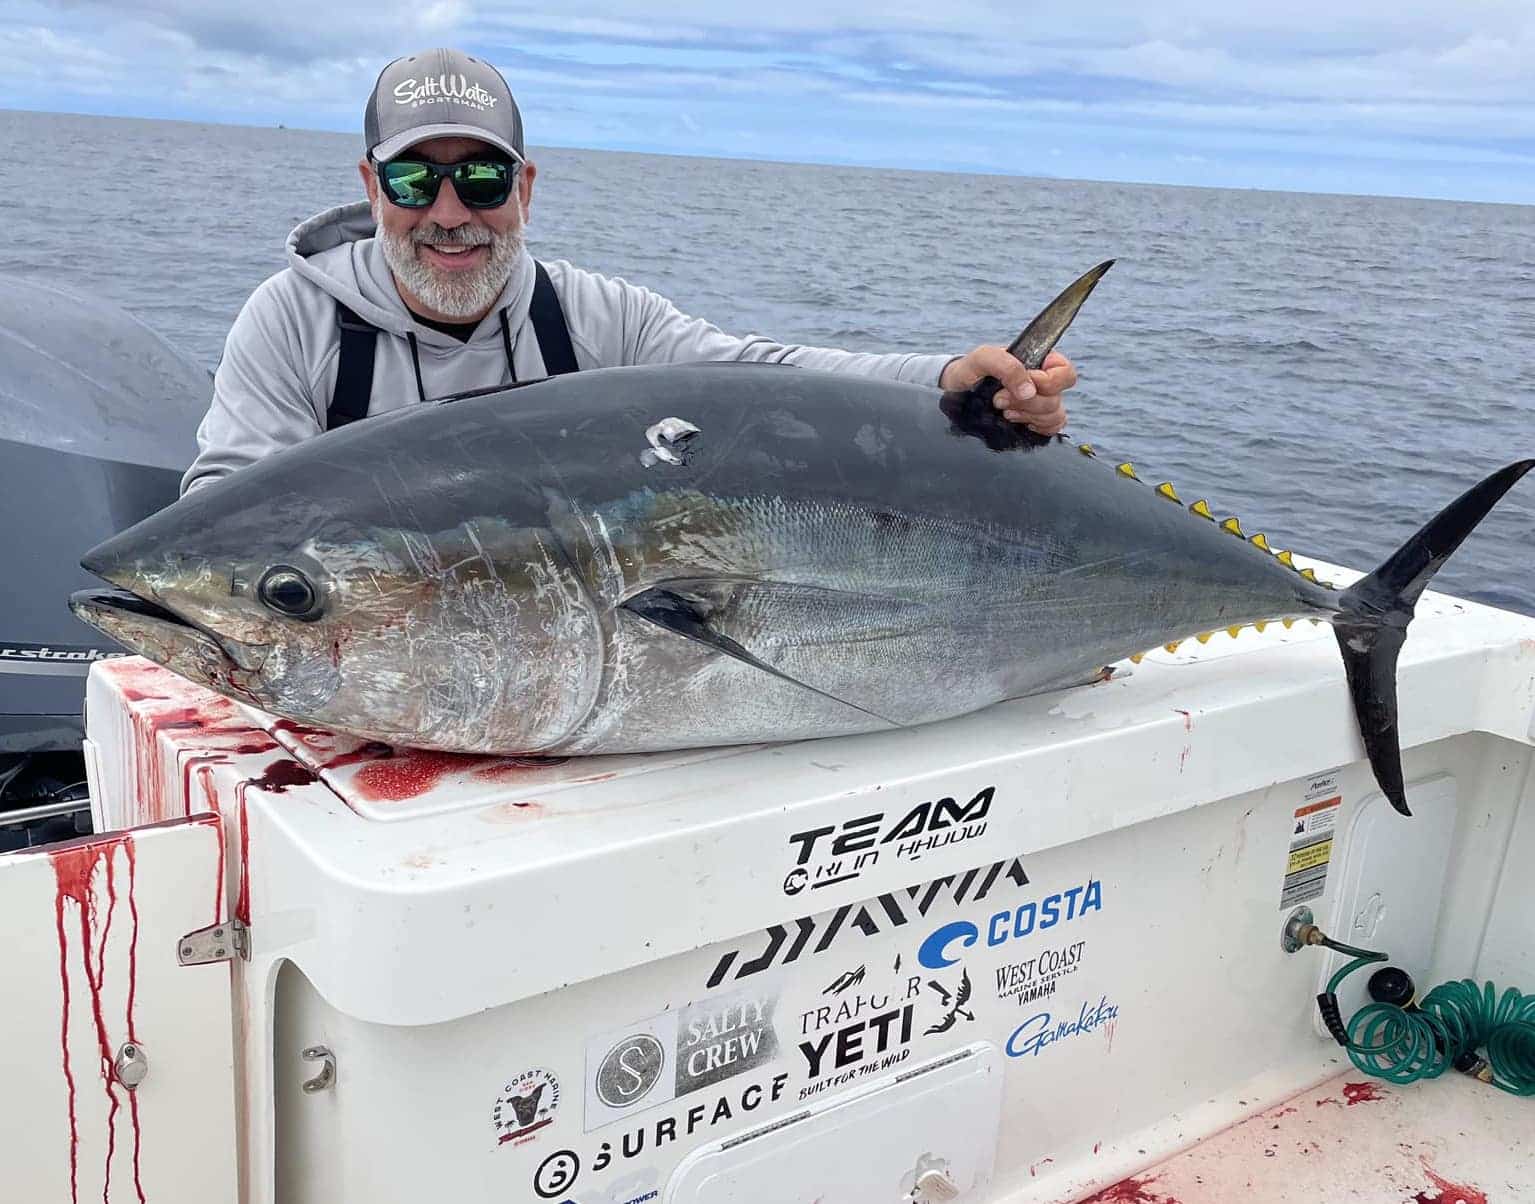 Bluefin Tuna Fishing Charter: Experience King of Seas in